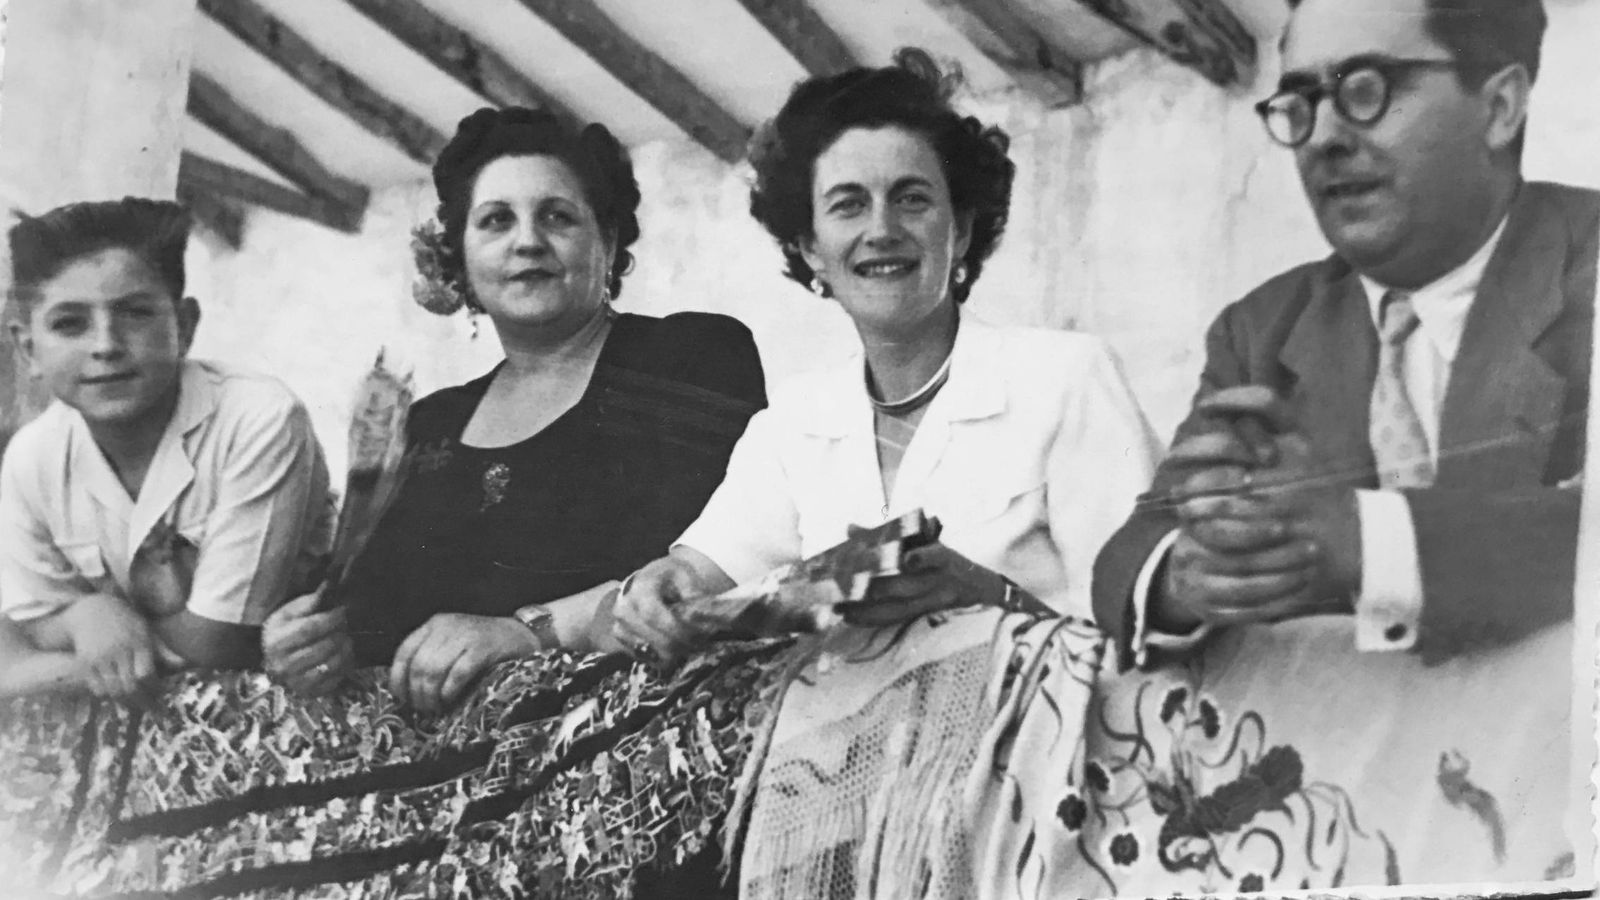 Foto: Piedad de la Cierva (segunda a la derecha) en una foto con familiares, en 1950 (Imagen: Archivo General de la Universidad de Navarra)